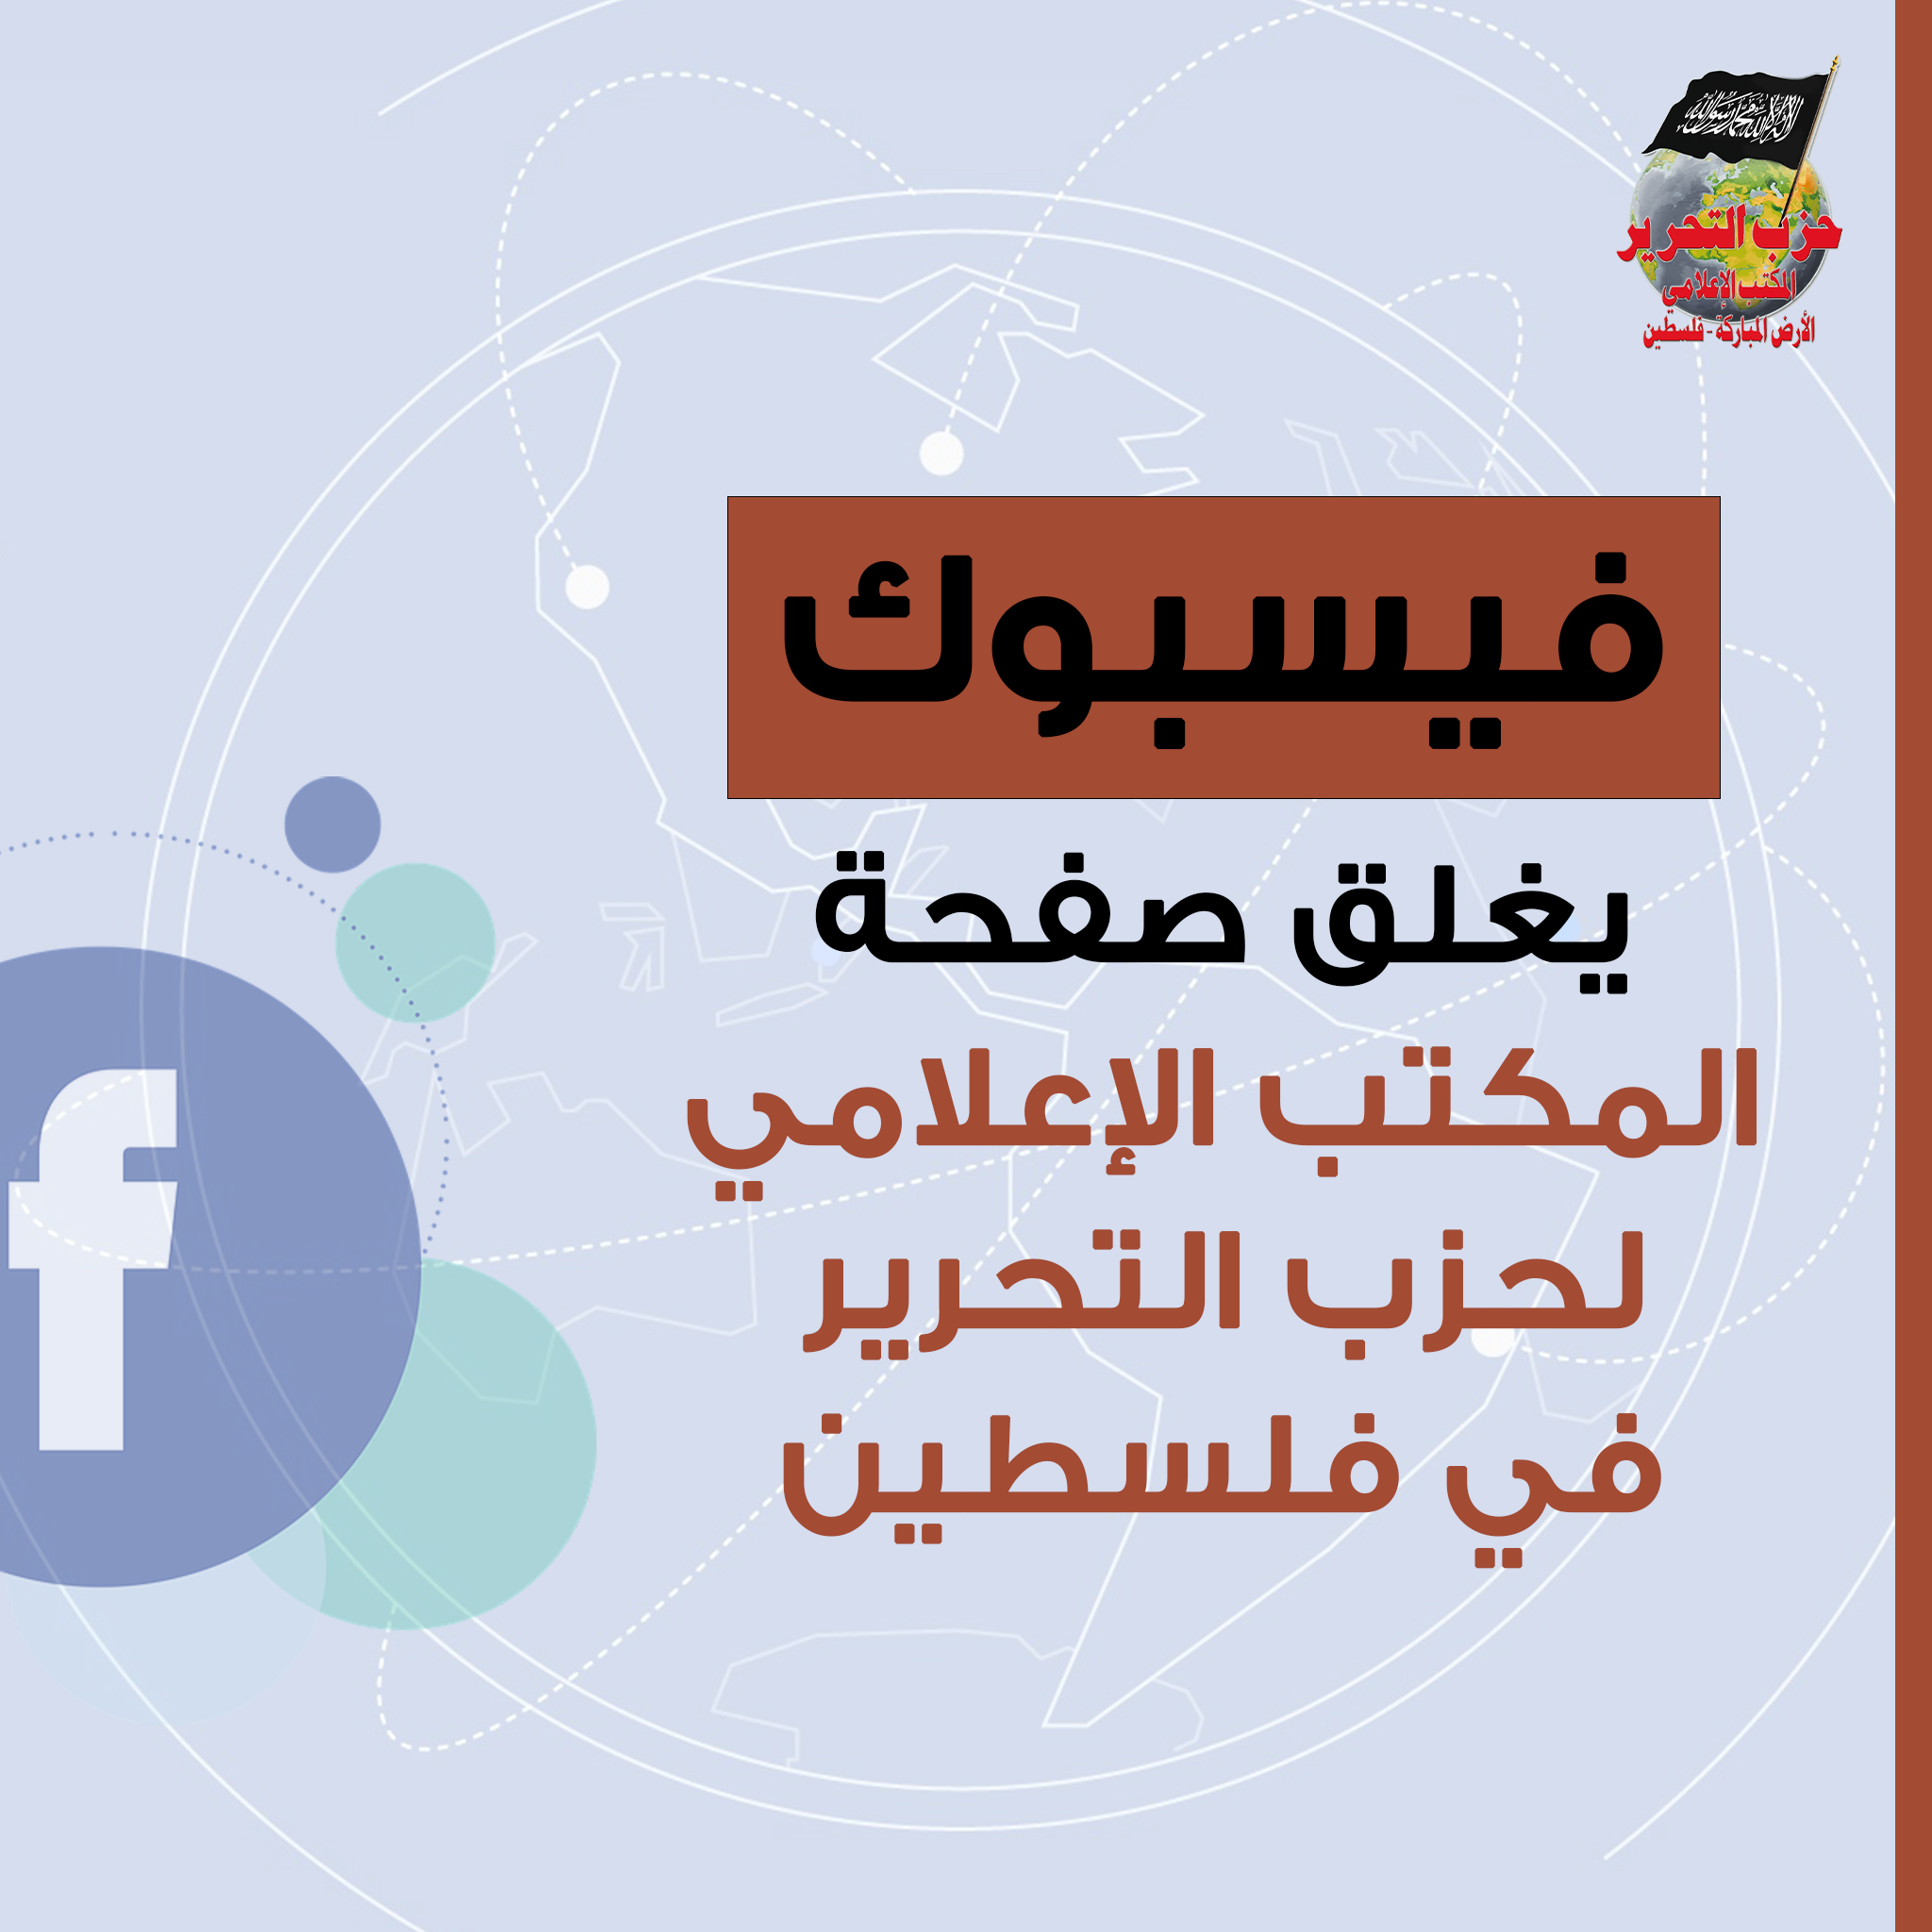 فيسبوك يغلق صفحة المكتب الإعلامي لحزب التحرير في فلسطين